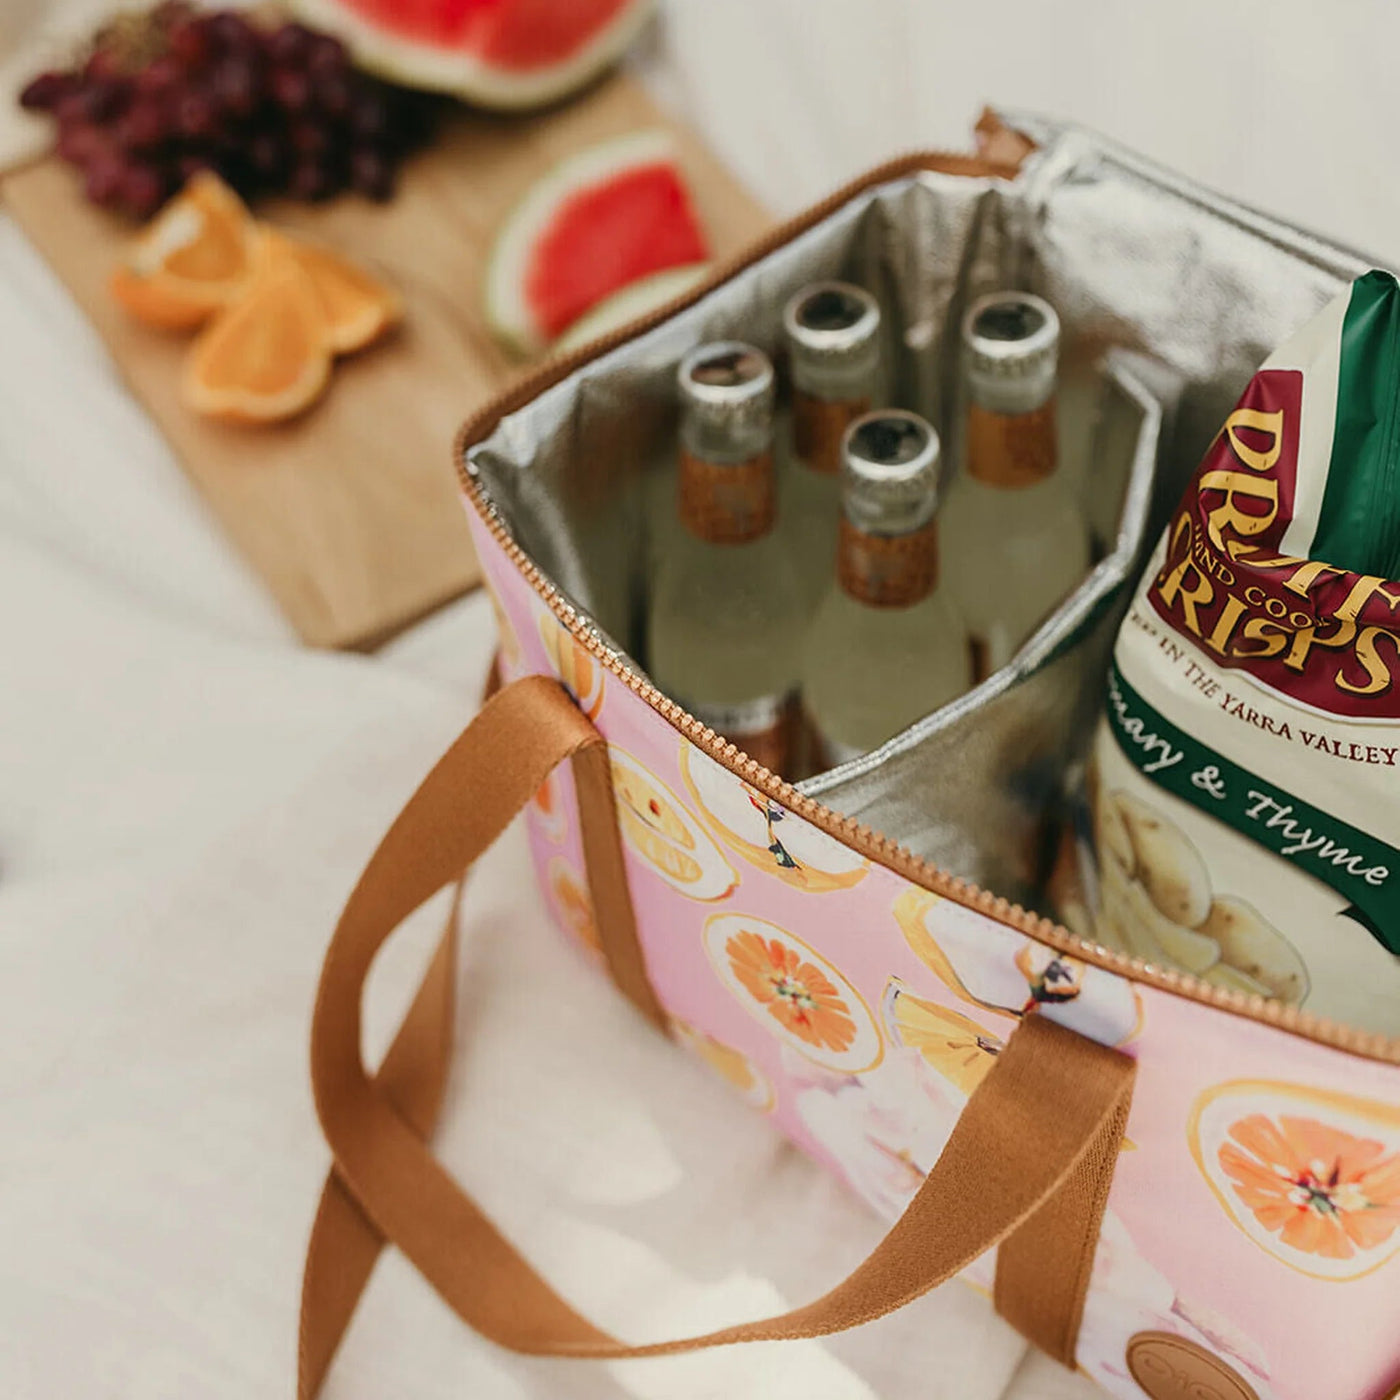 OiOi Maxi Insulated Lunch Bag - Tutti Frutti Mealtime OiOi 